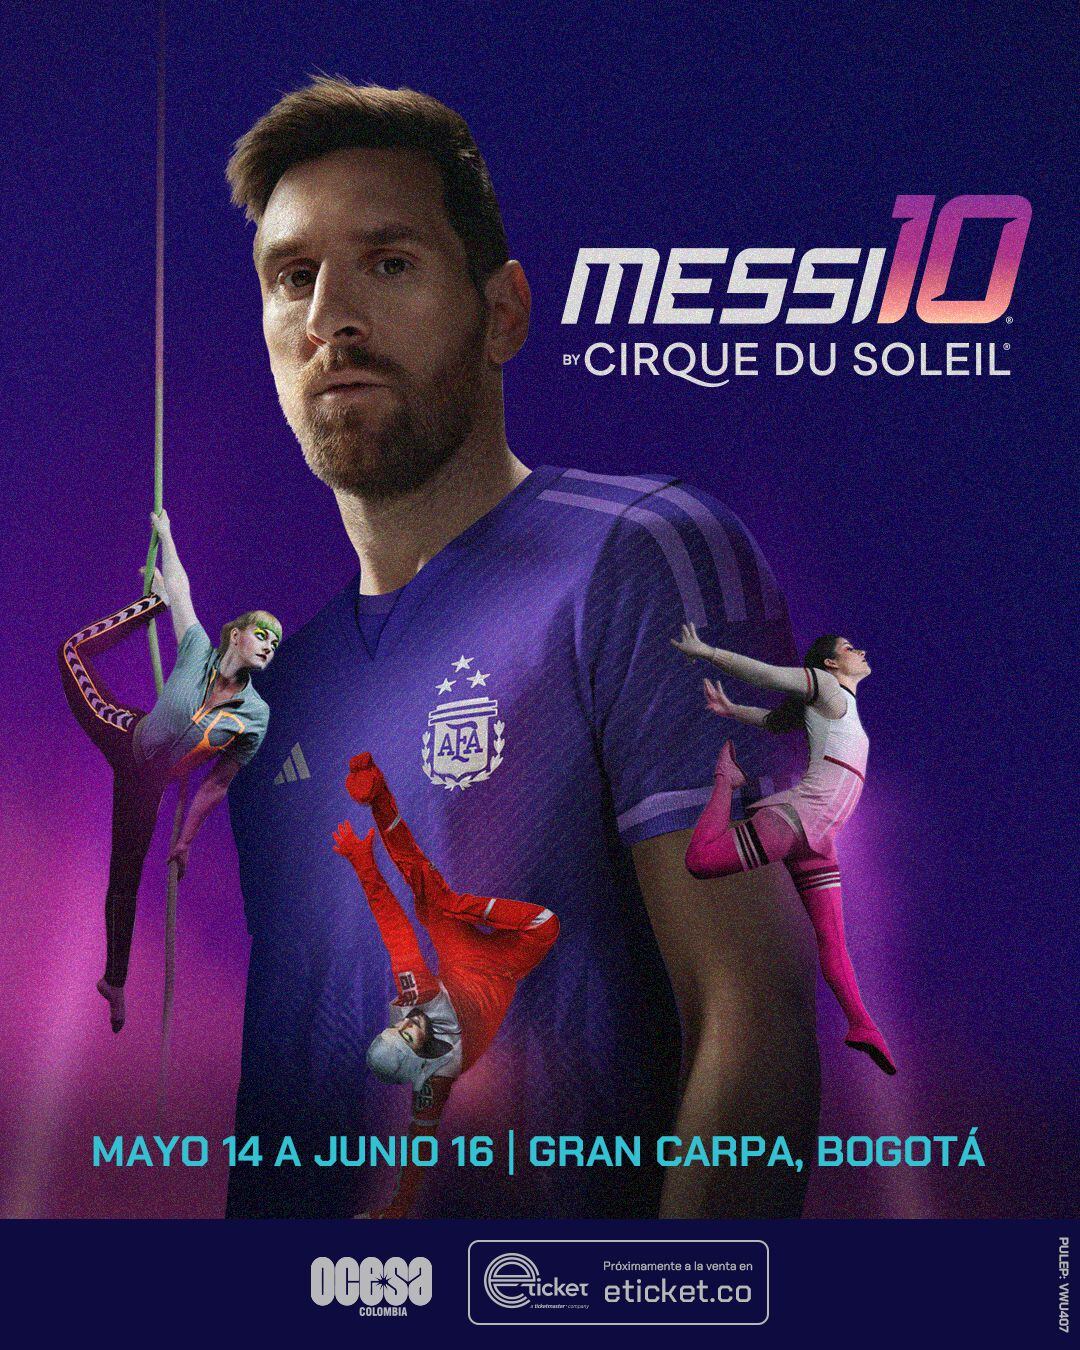 Anuncio espectáculo Messi10, de Cirque du Soleil